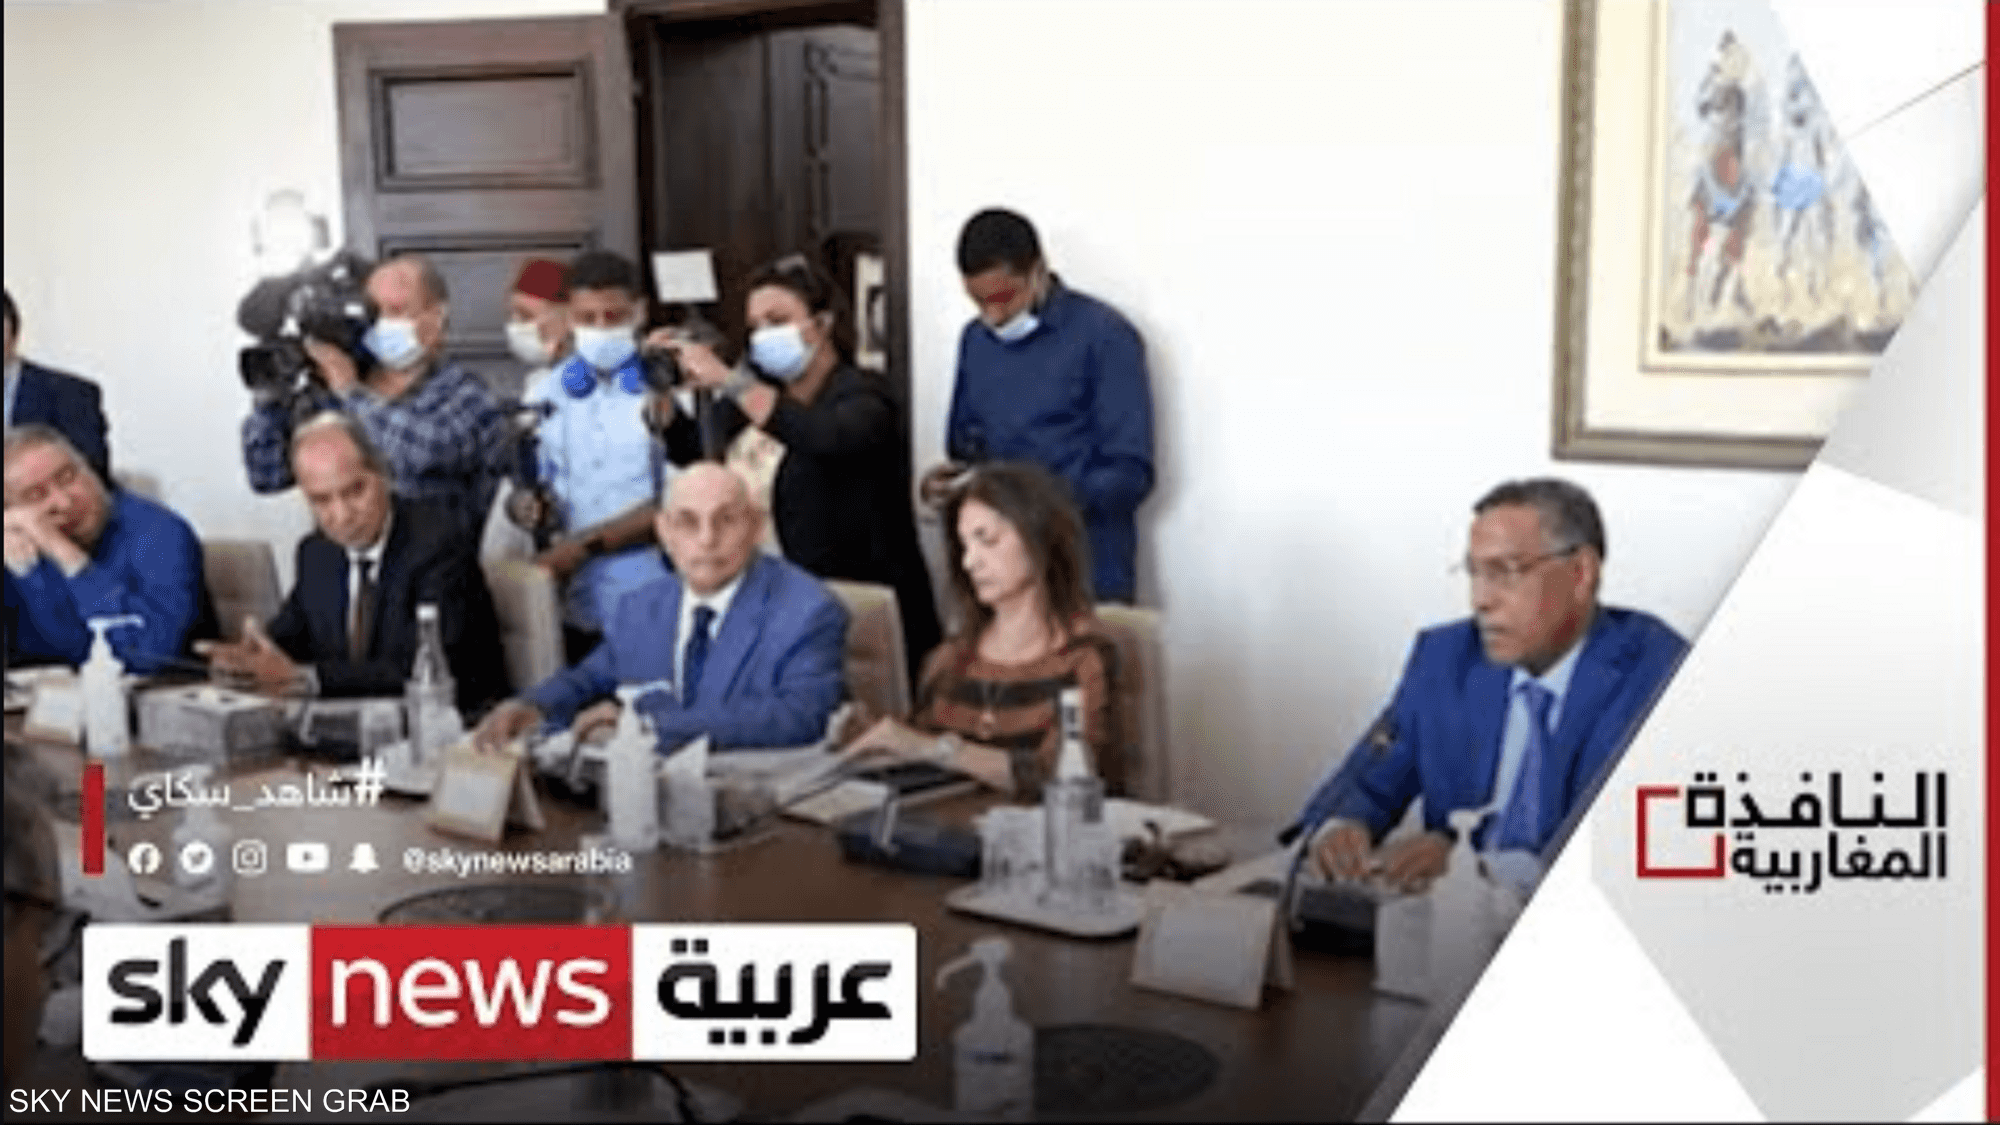 حوار بين الحكومة المغربية والنقابات لإصلاح نظام التقاعد